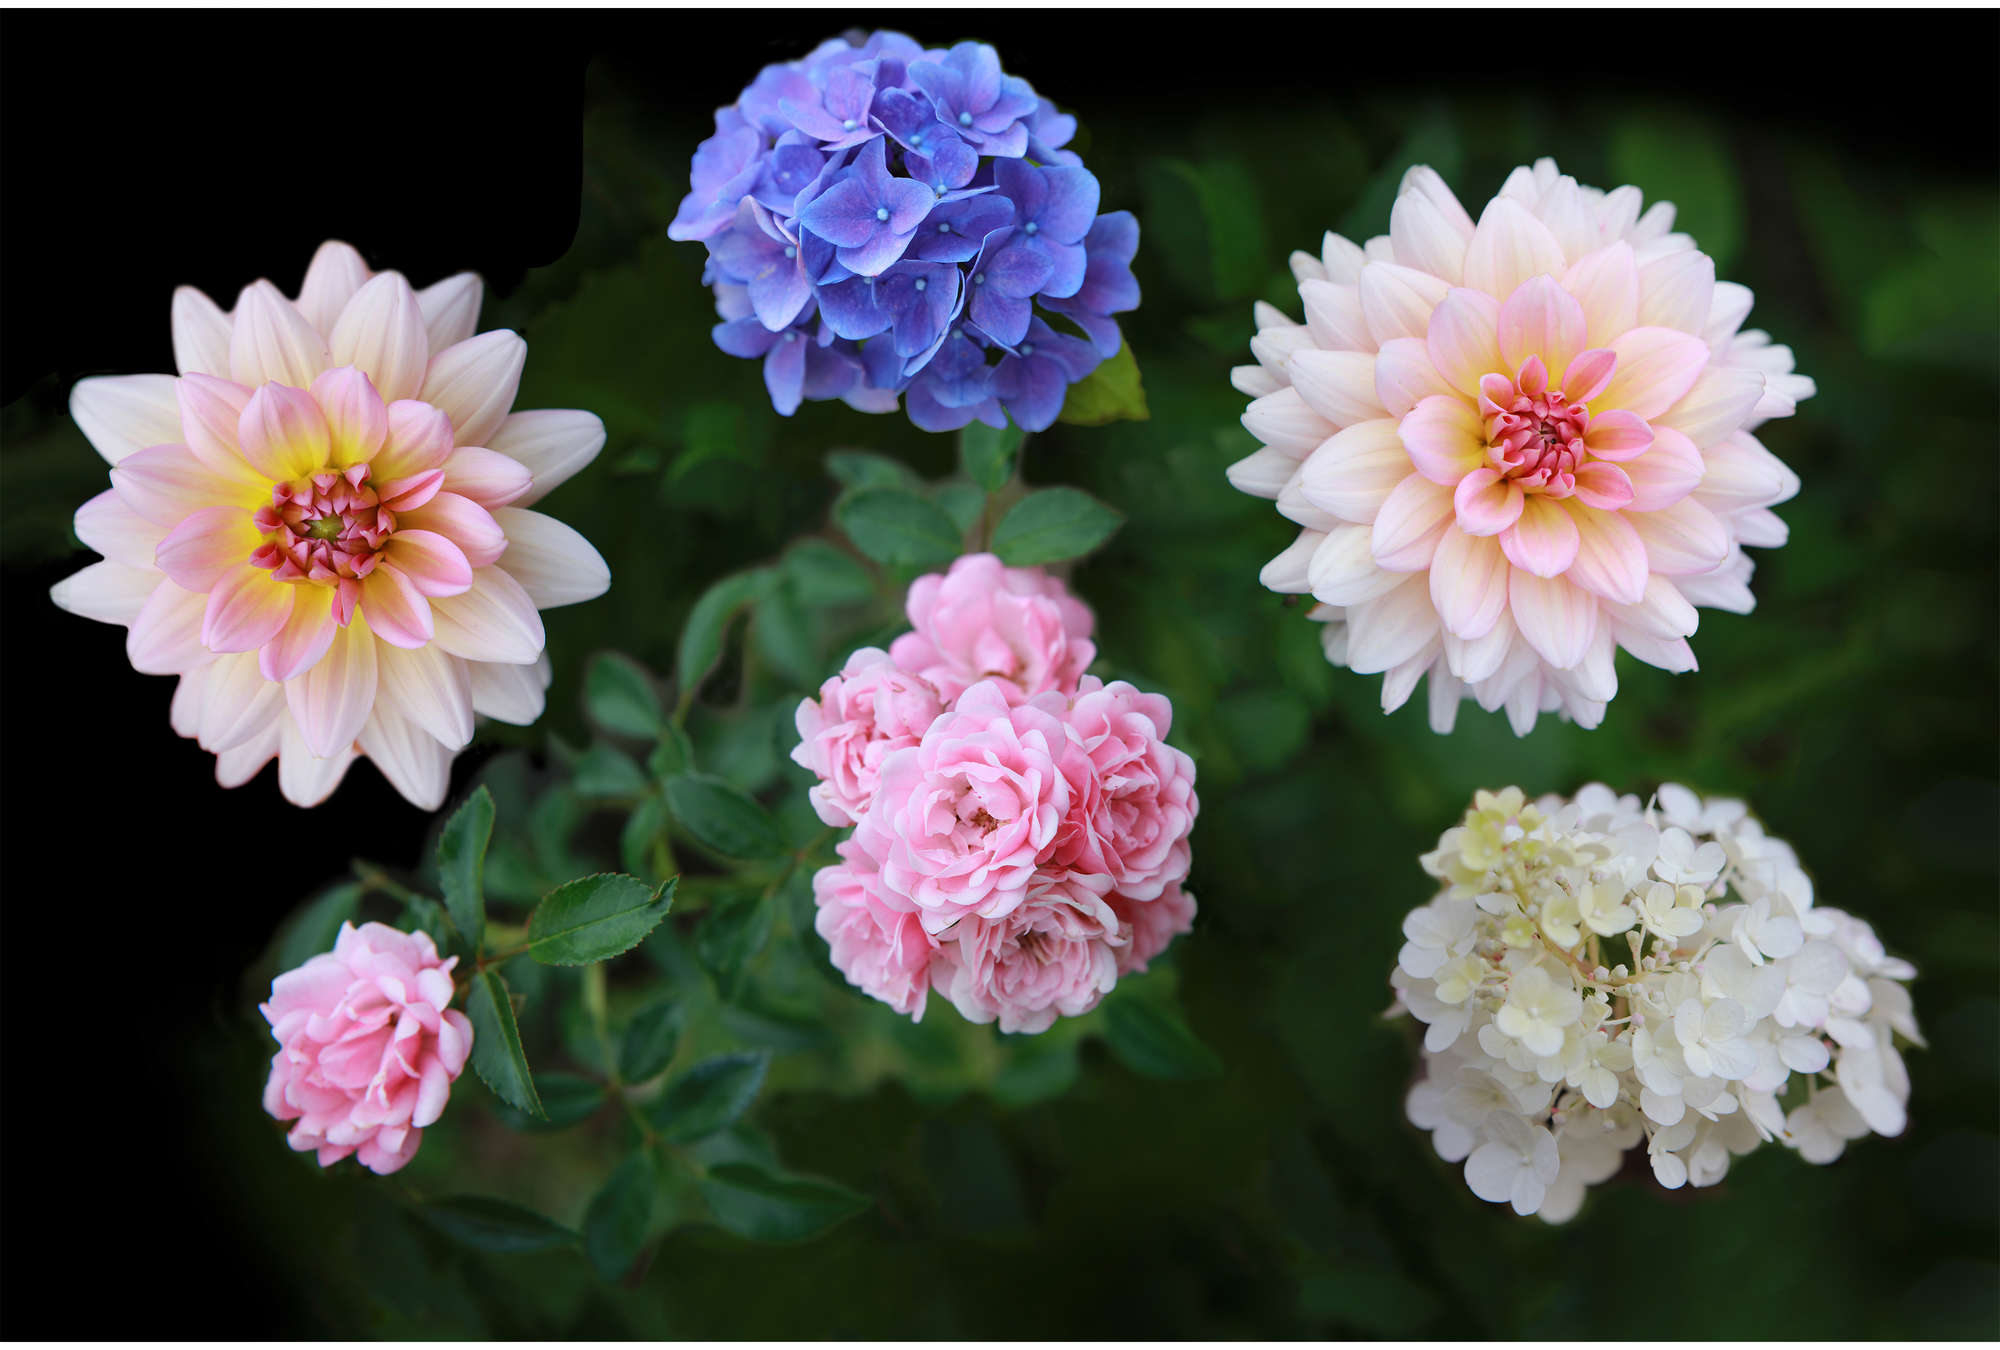             Blumen Fototapete mit detailreichen Blüten im XXL Format
        